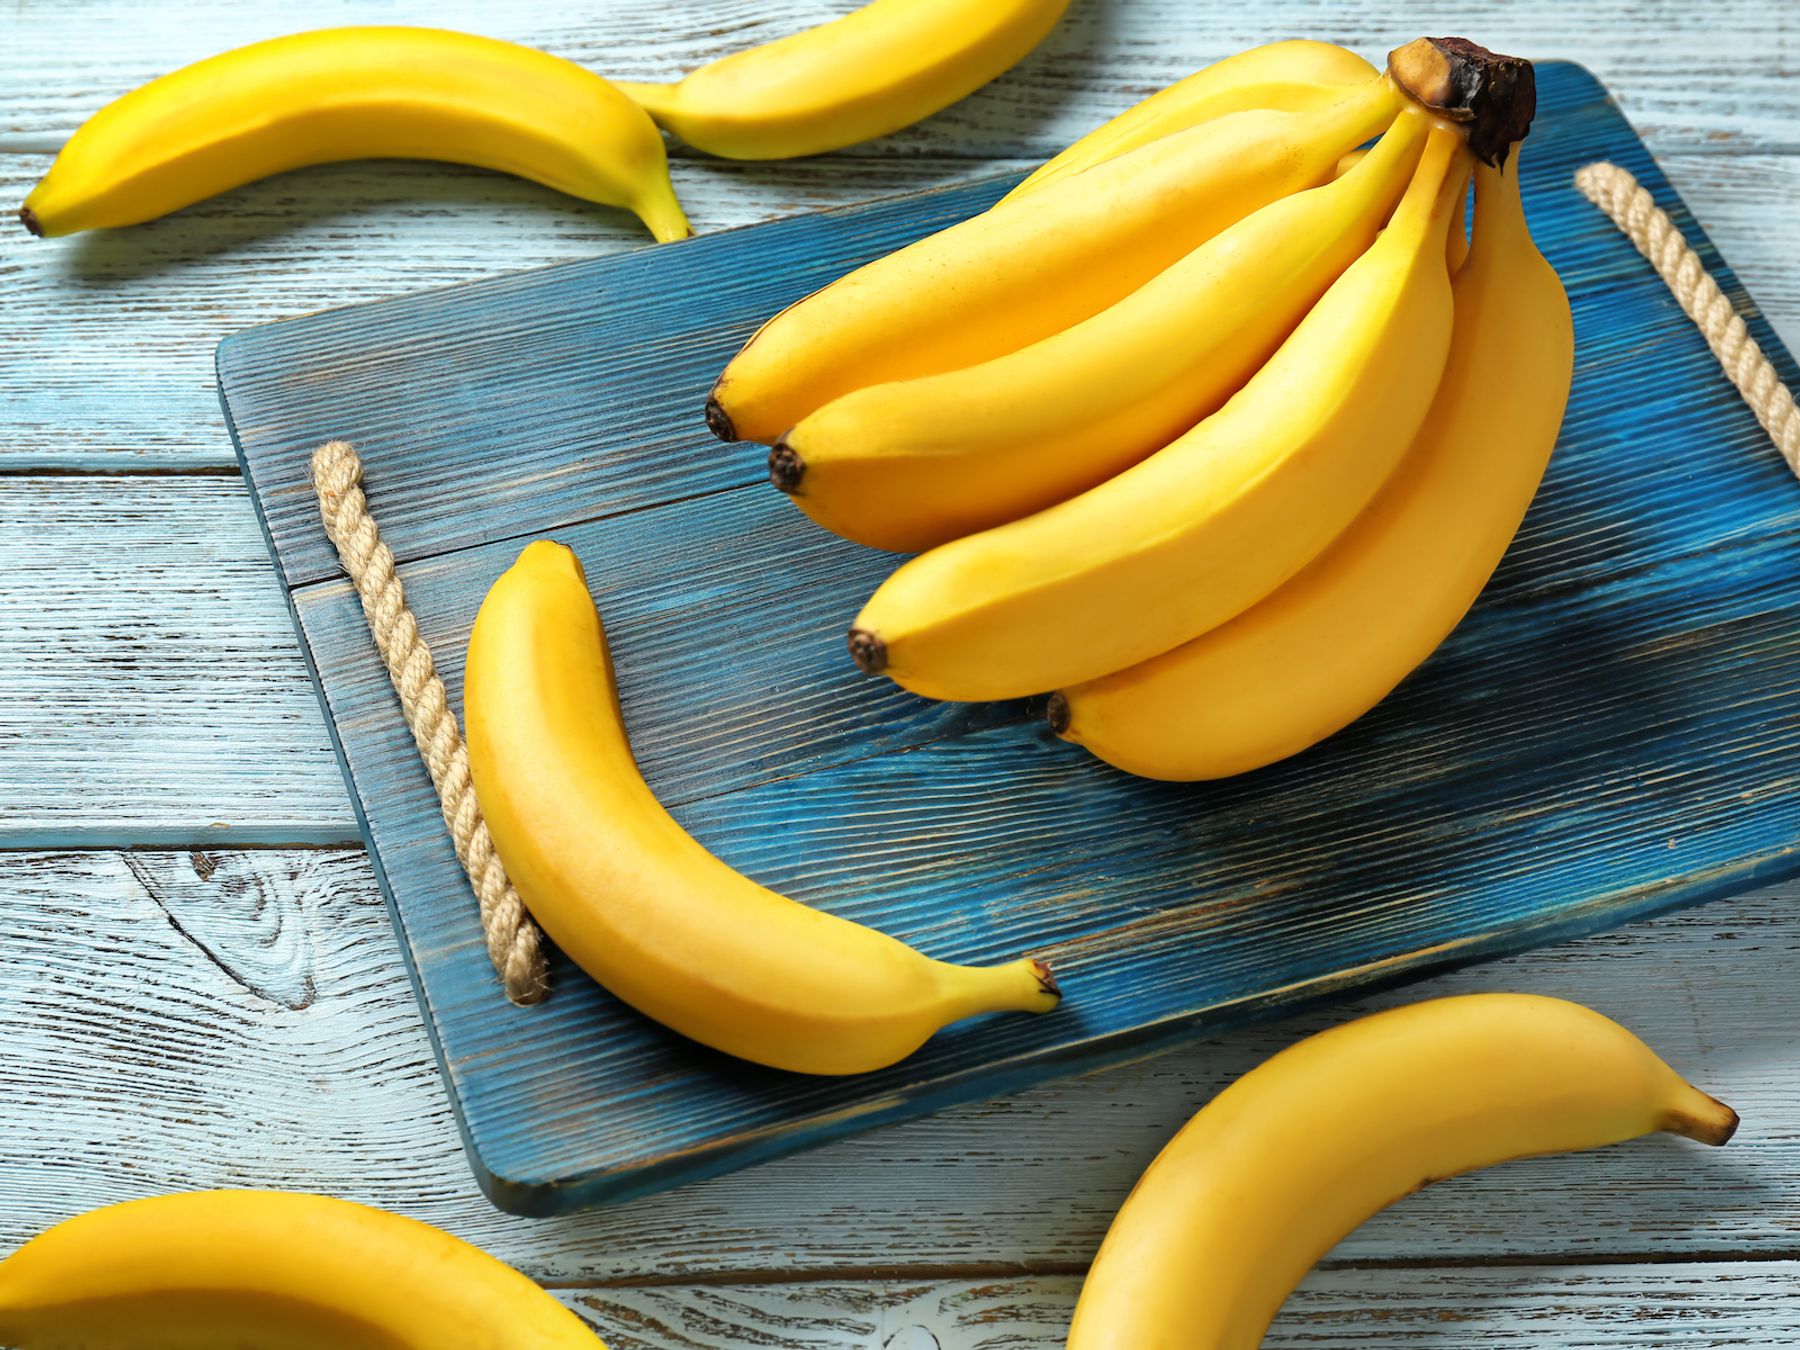 Comment garder les bananes fraîches et éviter qu'elles ne